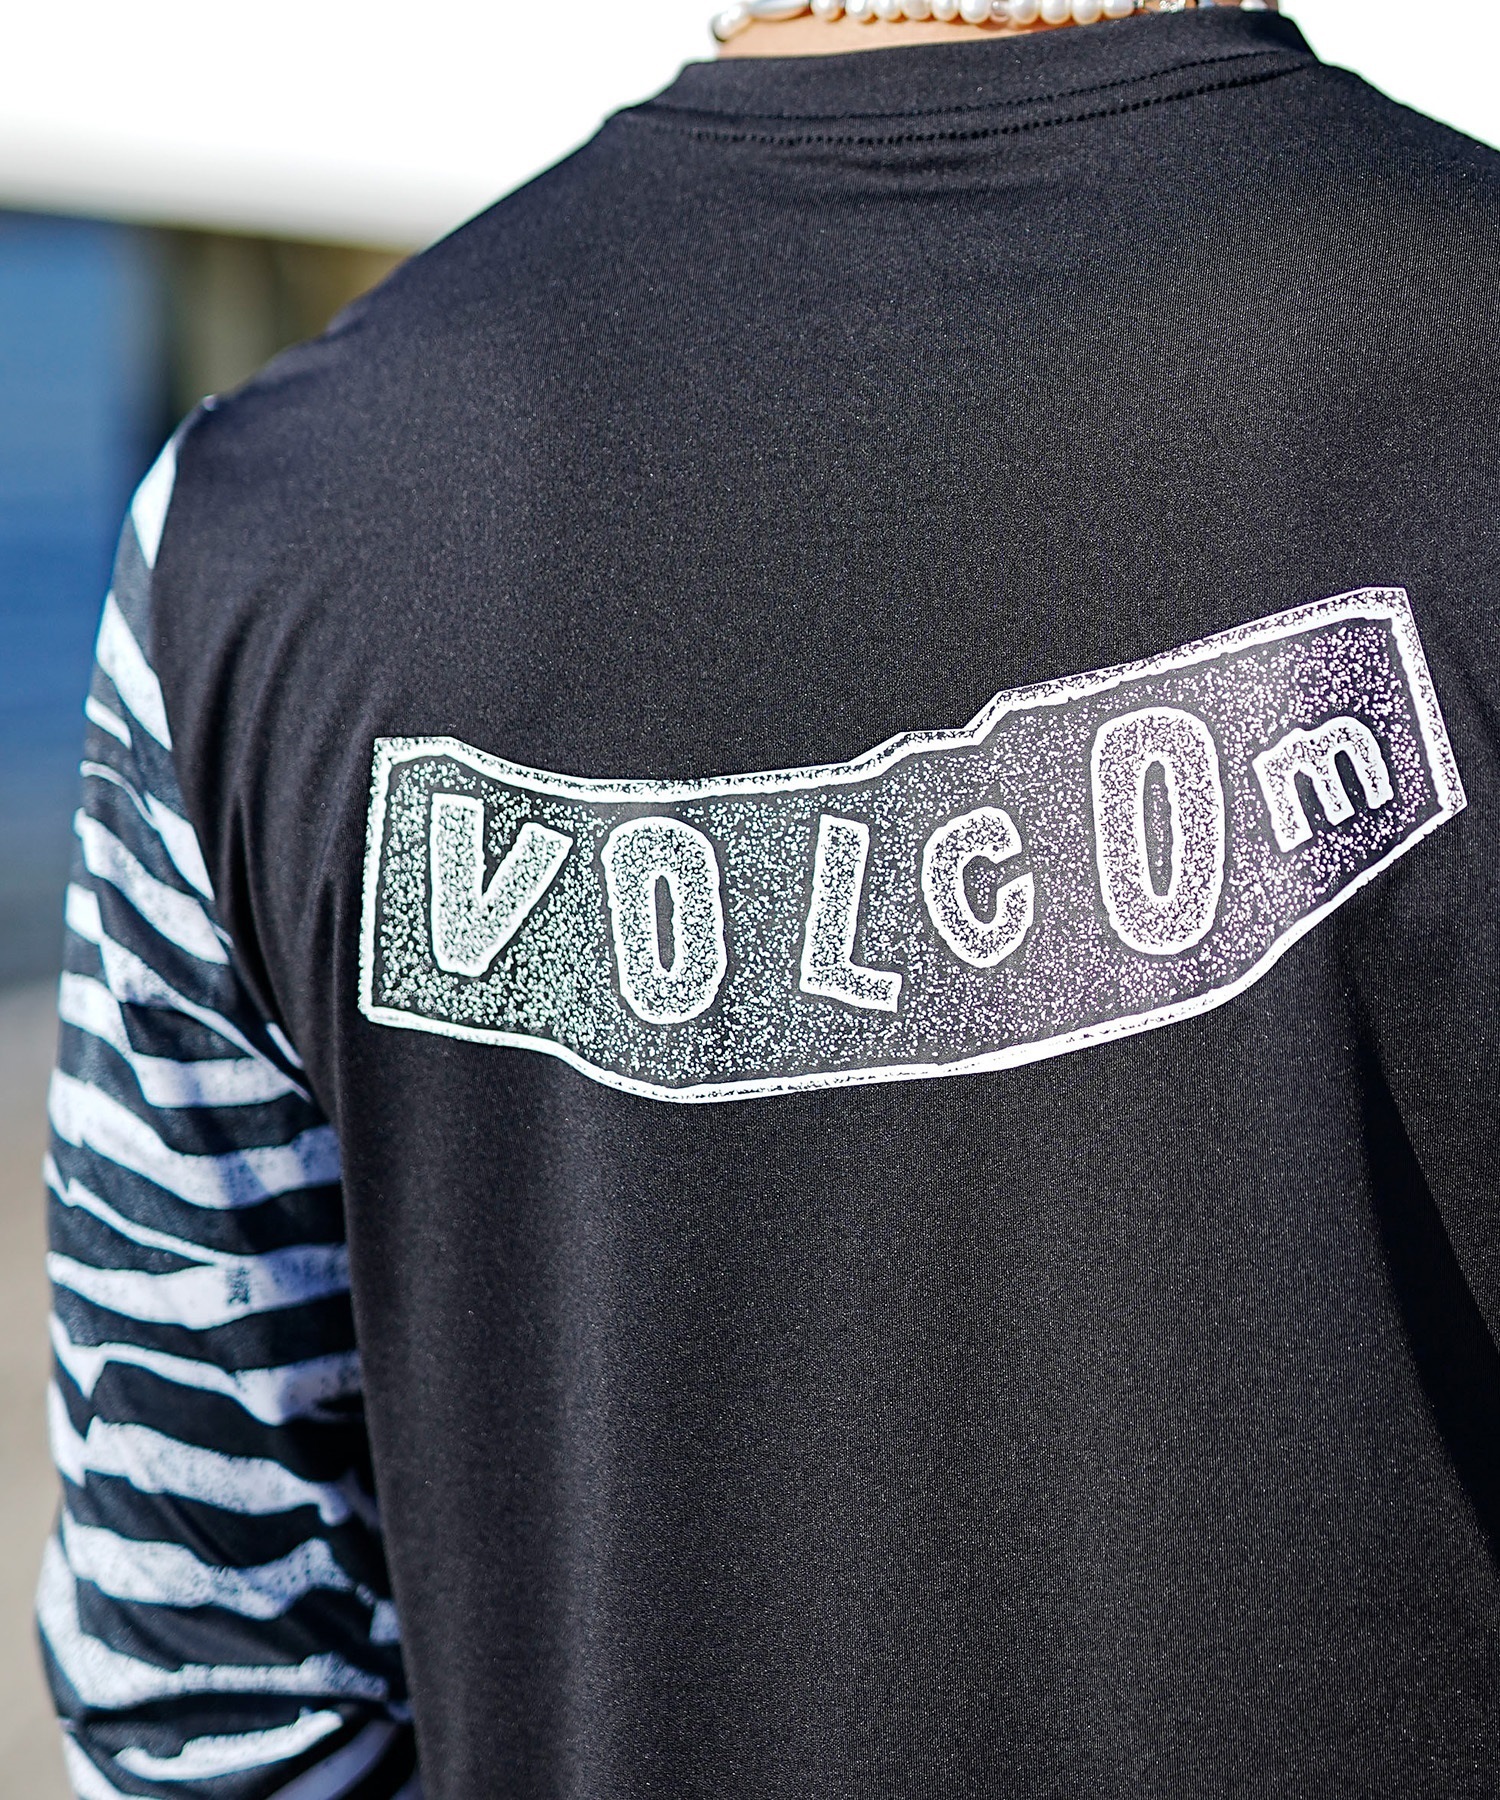 【マトメガイ対象】VOLCOM ボルコム メンズ ラッシュガード Tシャツ 長袖 水着 UVカット バックプリント A9312404(BLK-S)